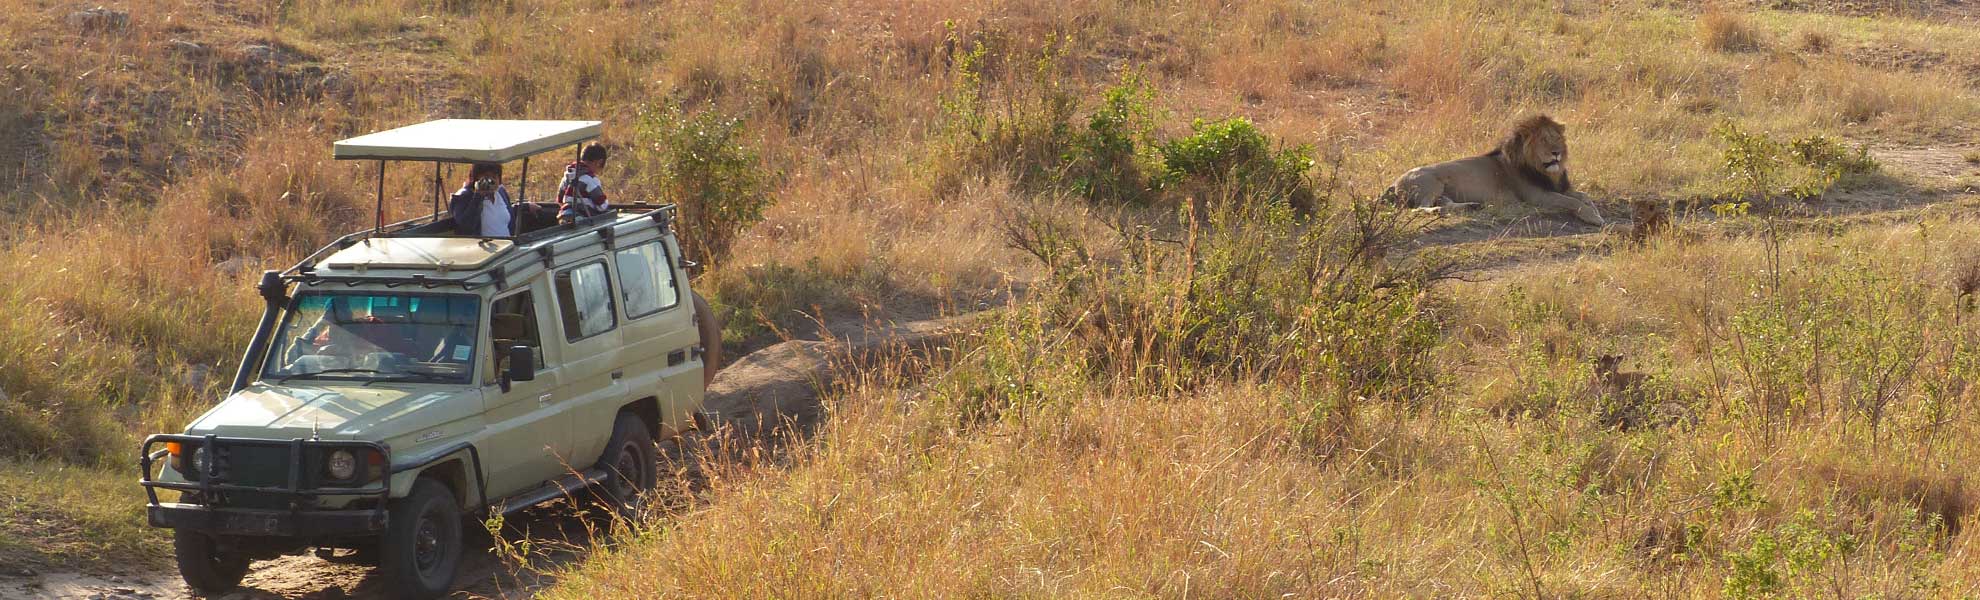 safari in kenya 7 giorni